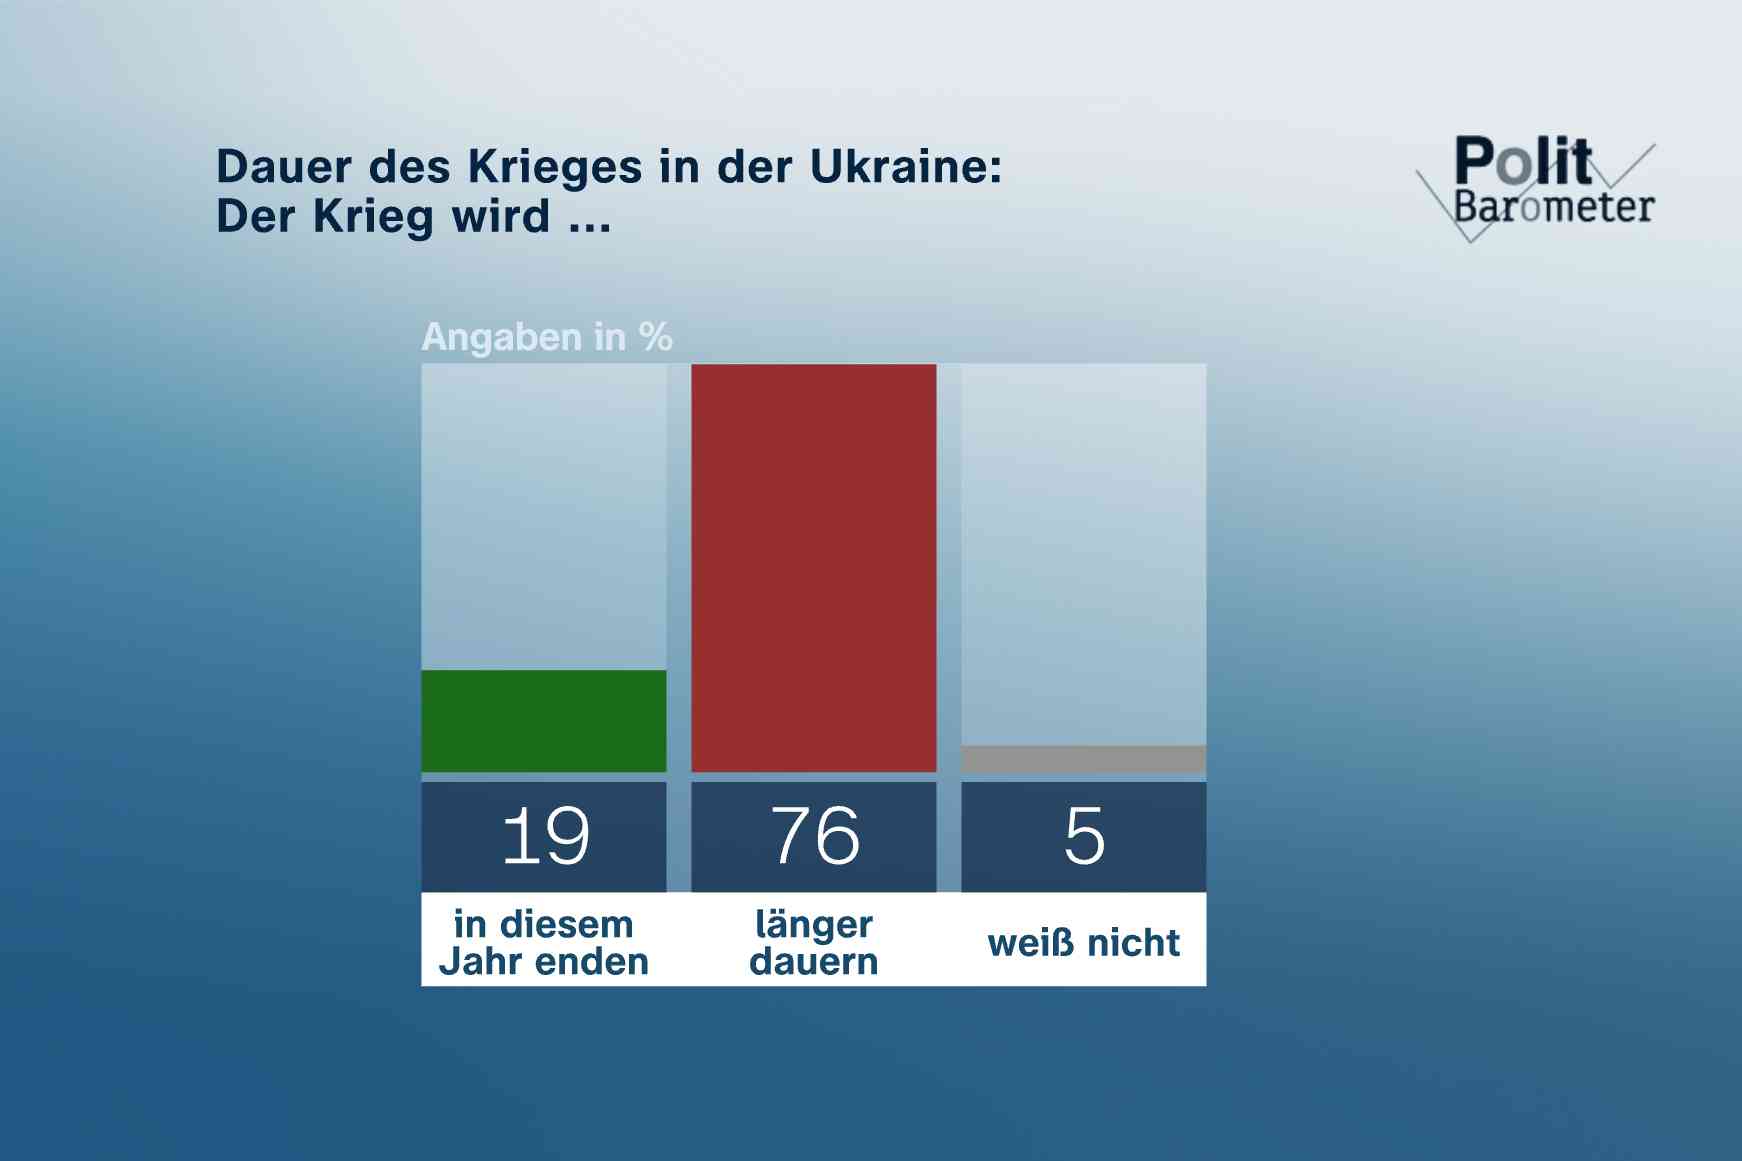 Dauer des Krieges in der Ukraine: Mehrheit erwartet kein Kriegsende in diesem Jahr!